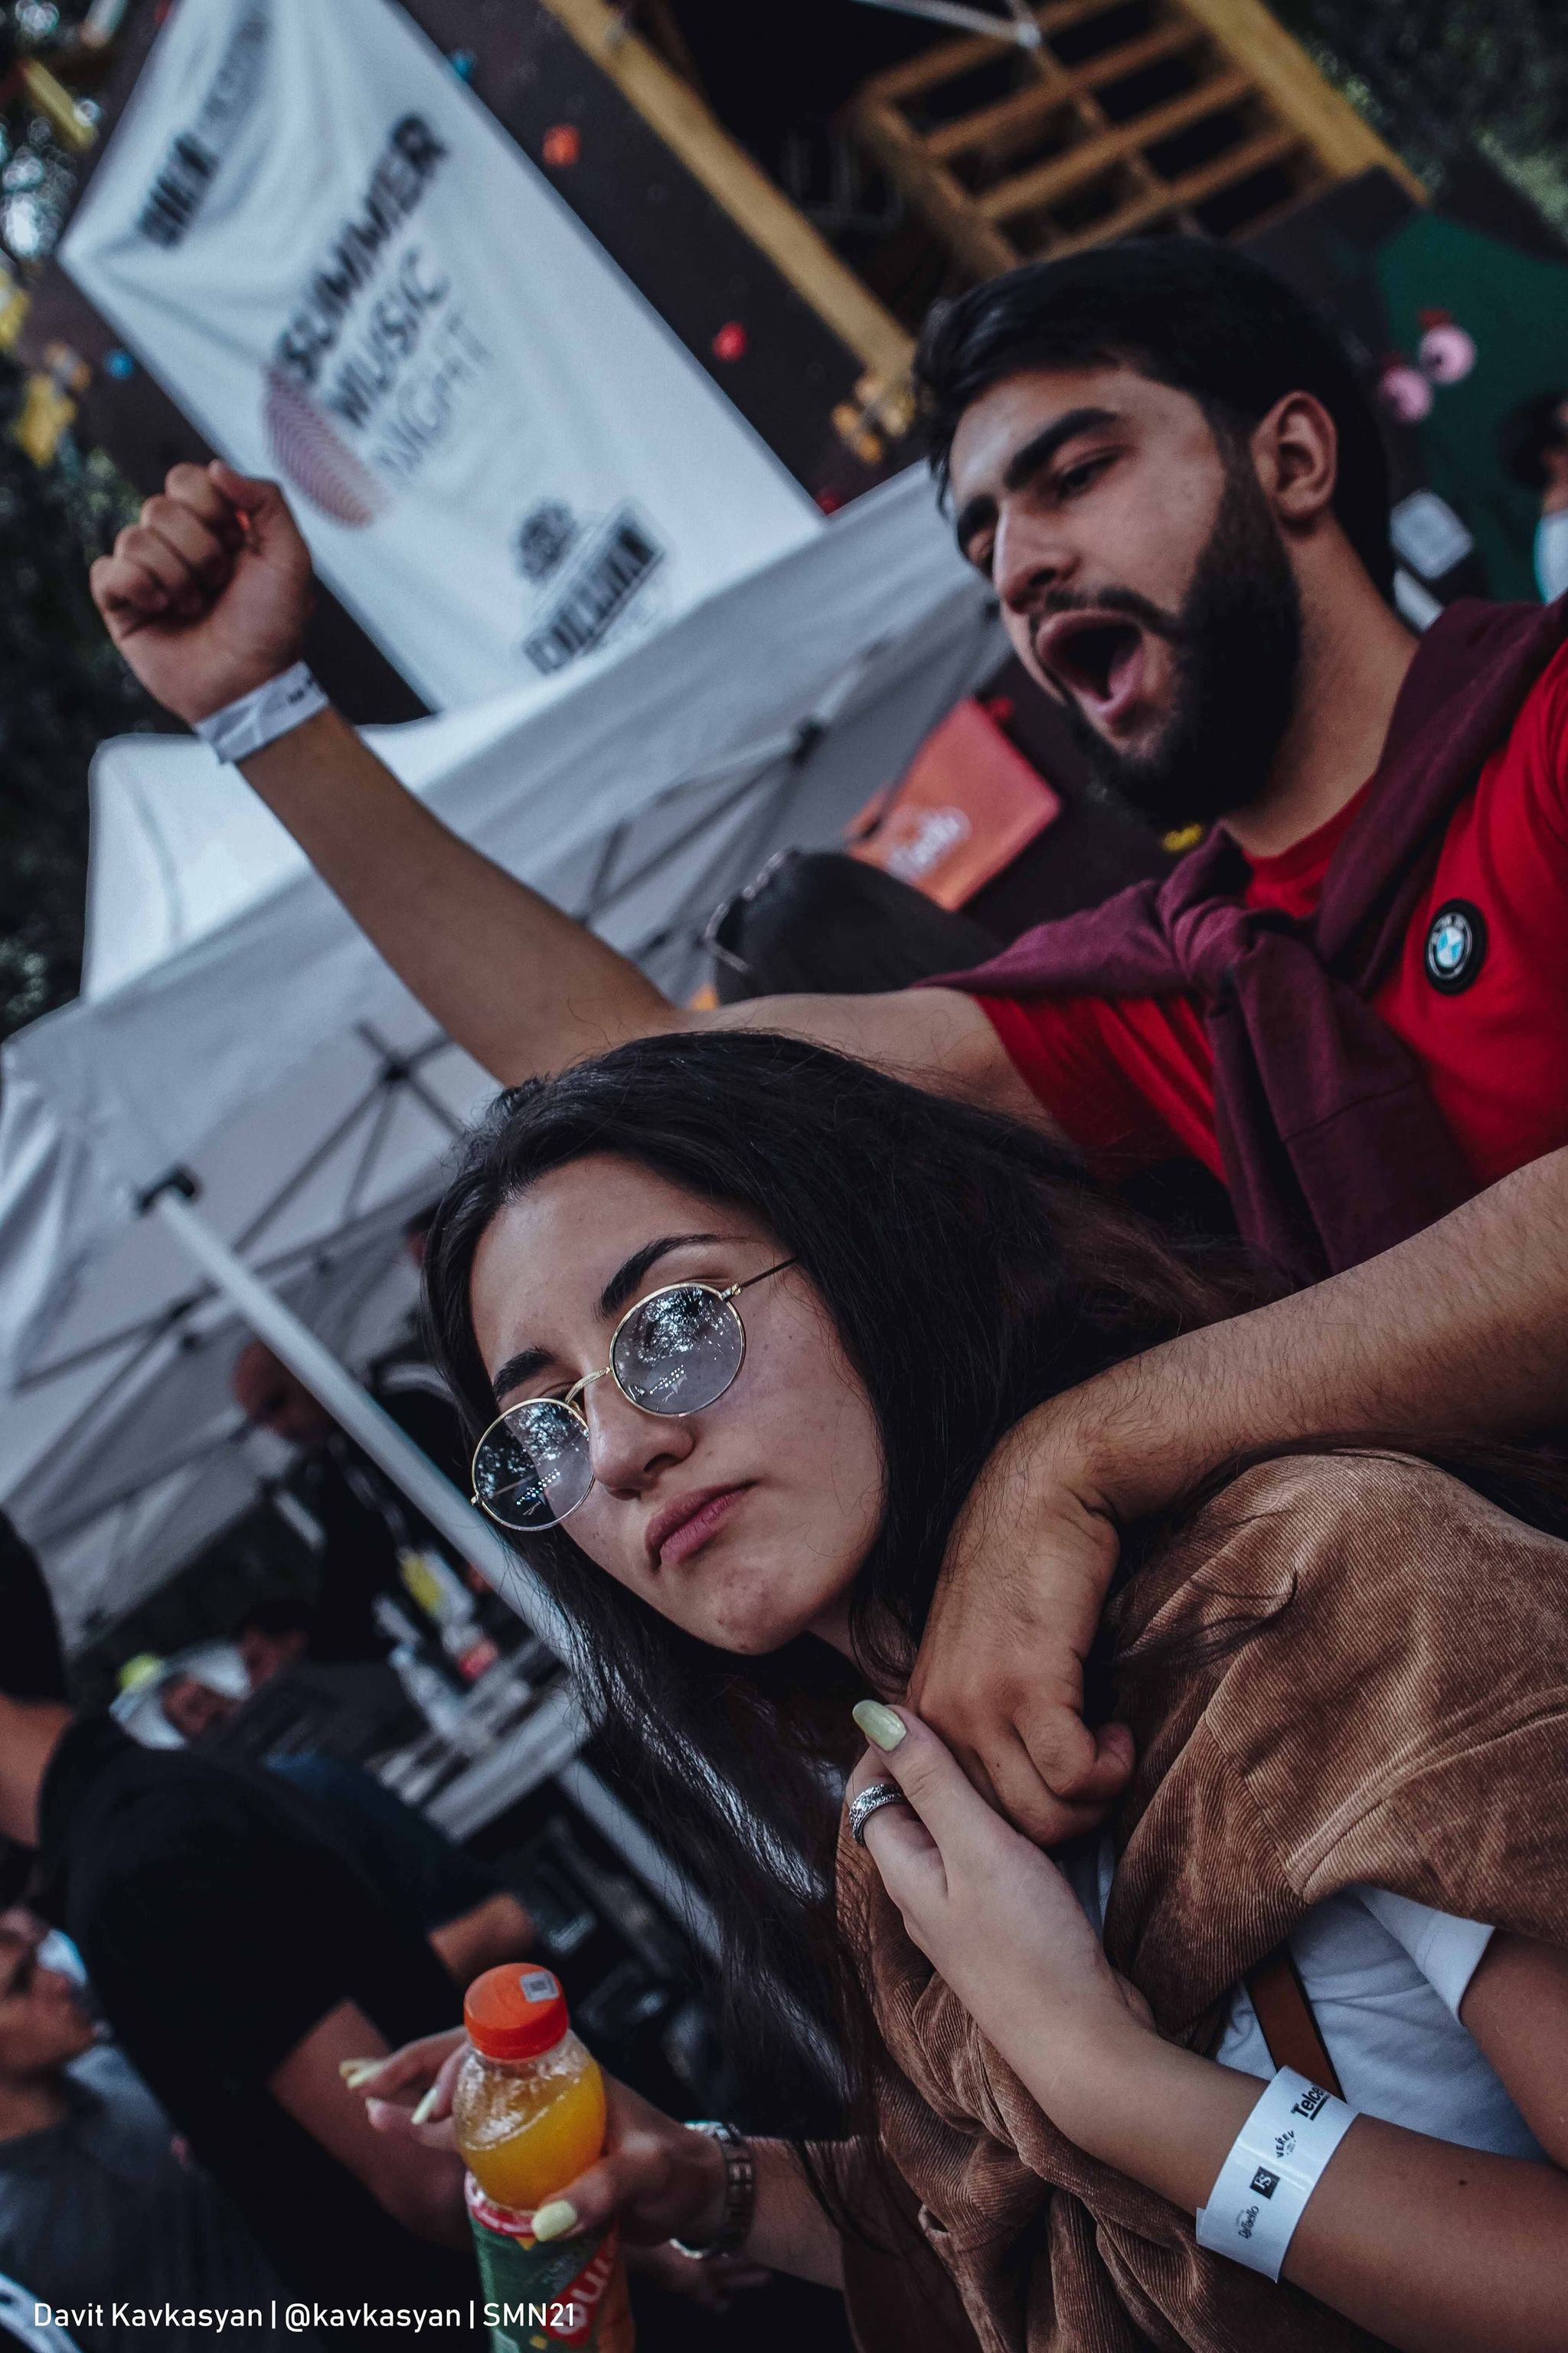 جشن شلوغ در دلیجان.  شب موسیقی تابستانی چگونه گذشت – اخبار ارمنستان